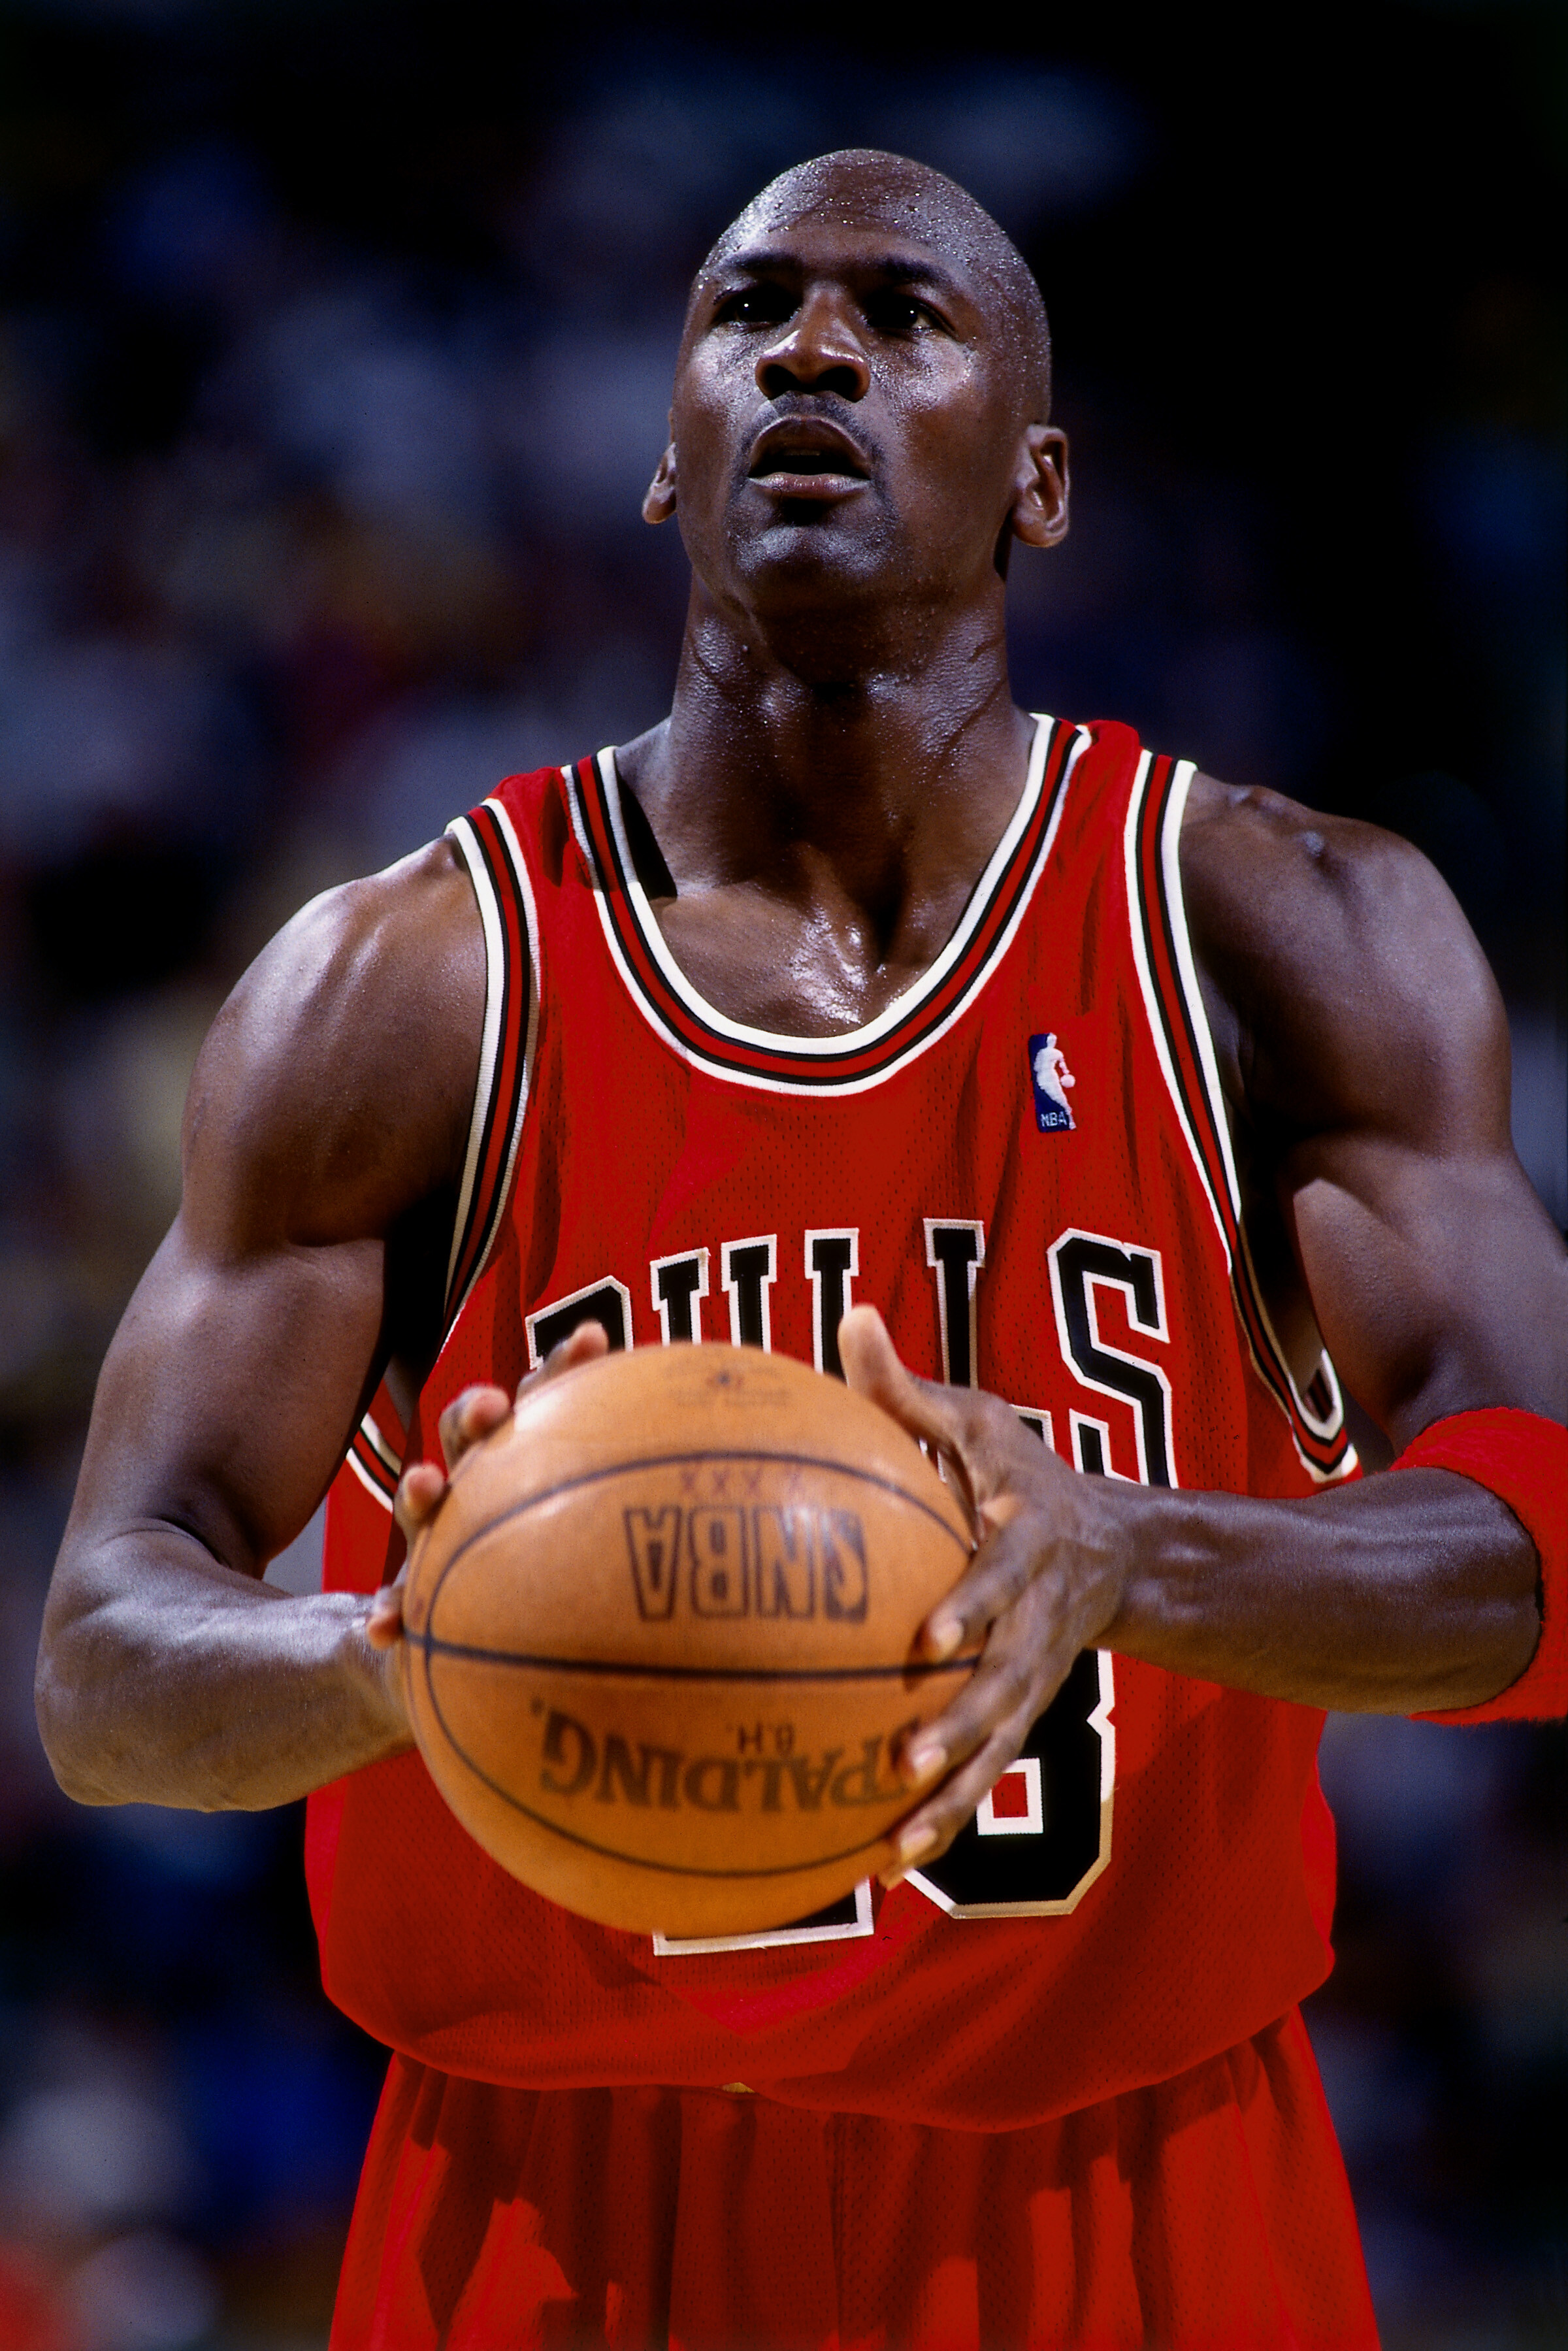 #23 マイケル・ジョーダン 1963年2月17日生まれ。シューティングガード。通算平均得点30.12点はNBA歴代1位。不滅の記録と記憶に彩られた「バスケットボールの神様」 Photo by Getty Imagesバスケットボール記事一覧